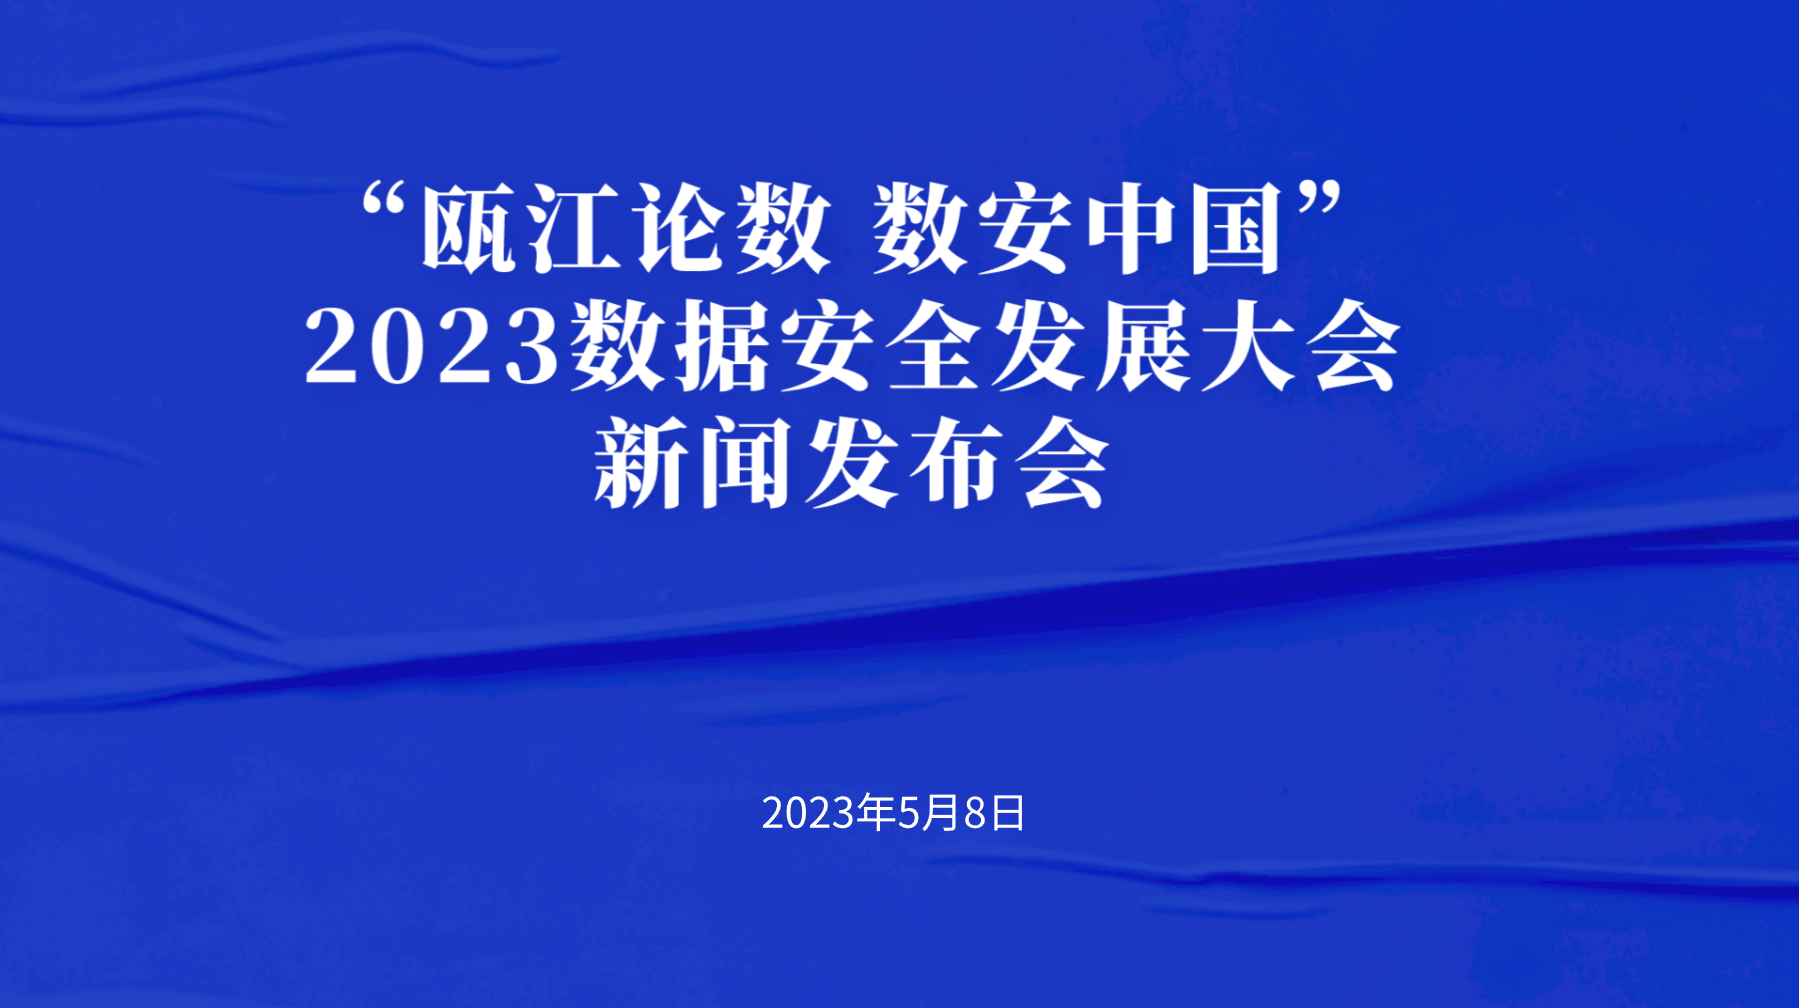 “瓯江论数 数安中国”2023数据安全发展大会新闻发布会